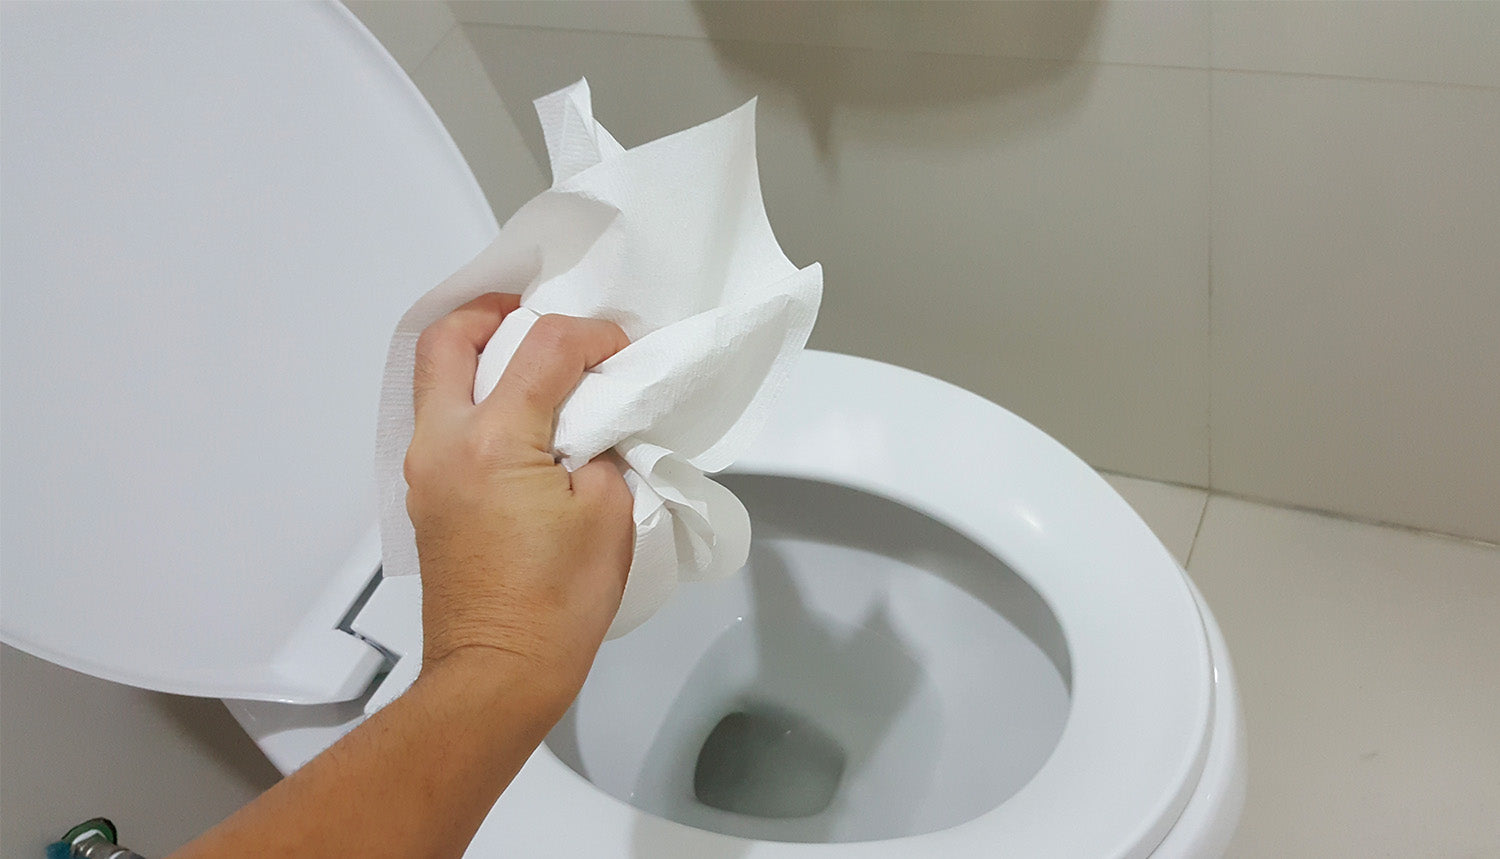 Pré-Plouf: Le Spray Anti-Odeur qui Révolutionne Les Toilettes – La Mousse à  Plouf